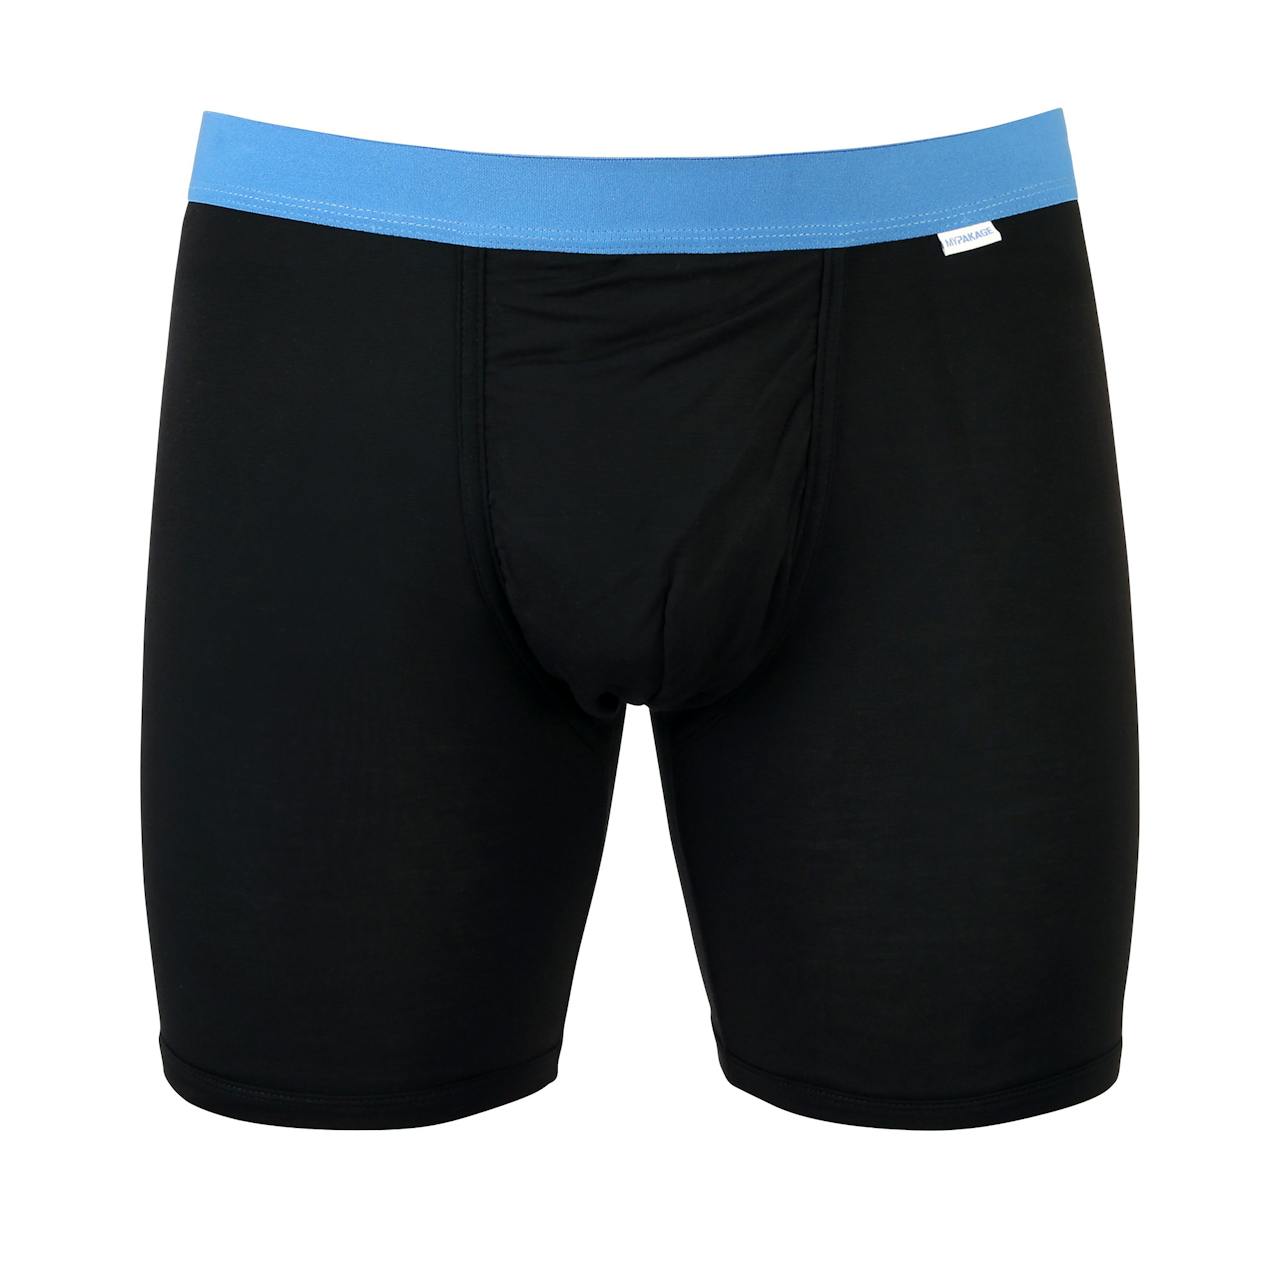 MyPakage Weekday Boxer Brief - Black Blue, Underwear